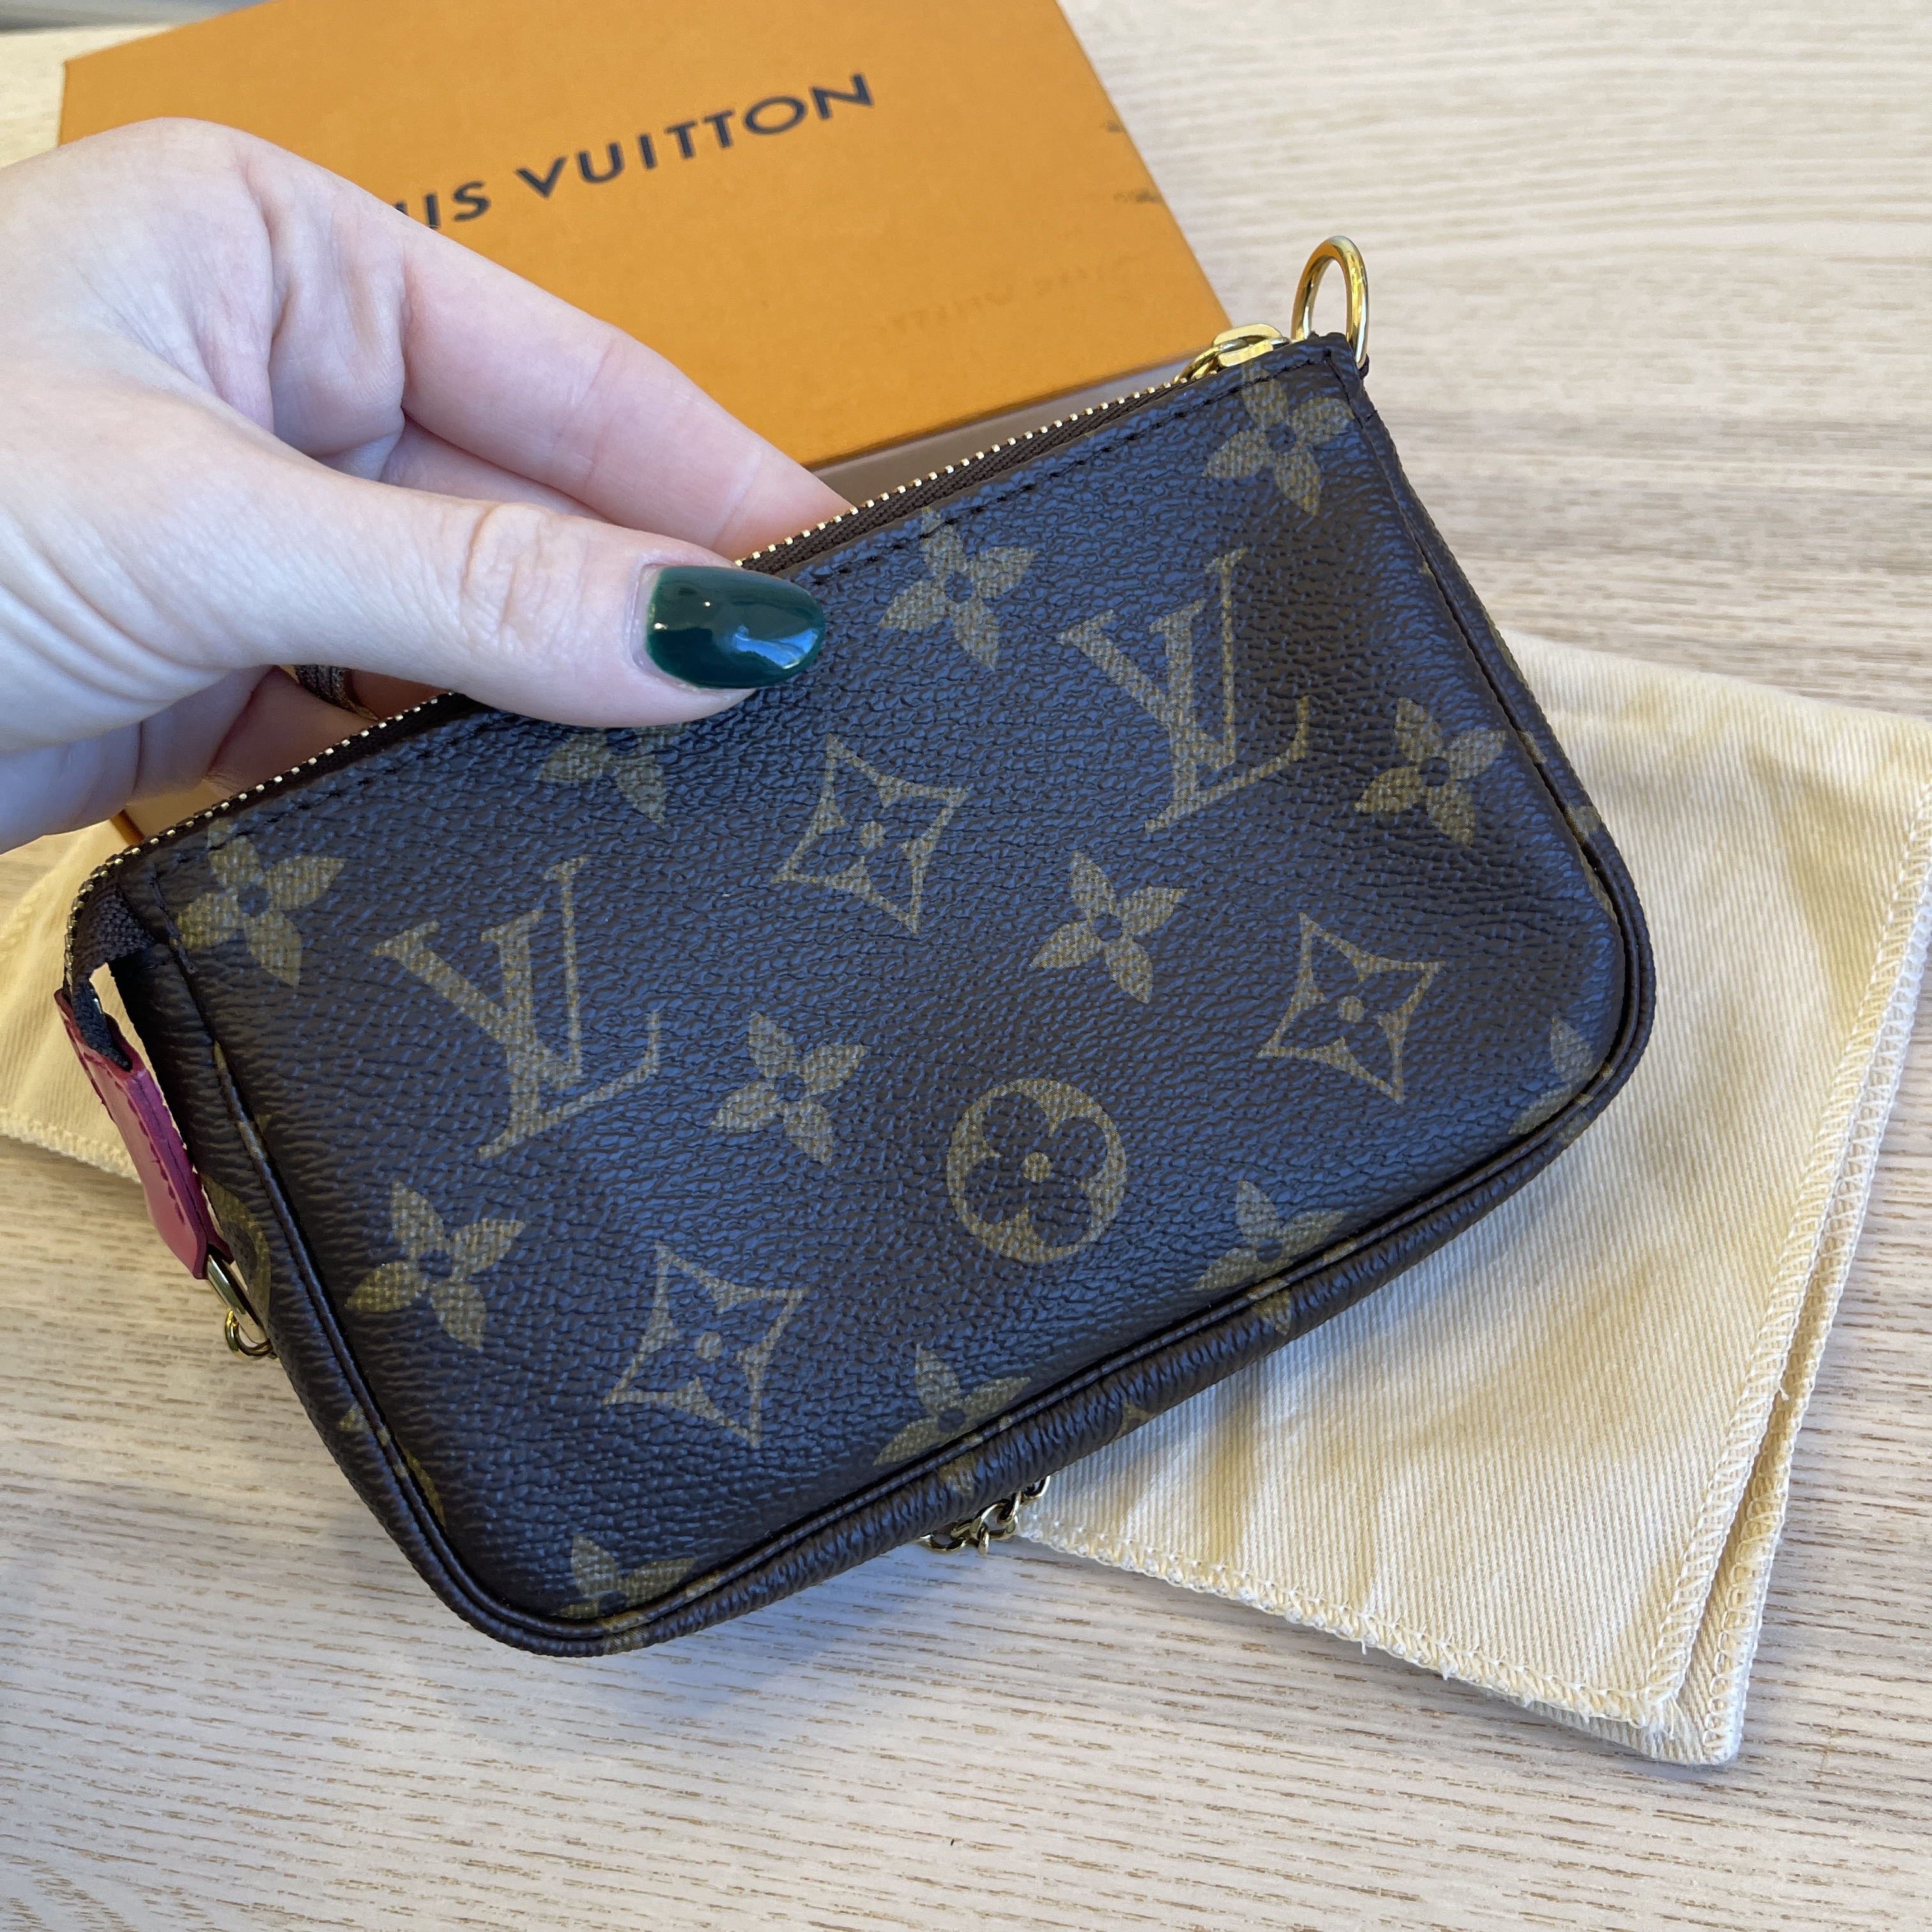 Louis Vuitton Mini Pochette Review + What Fits